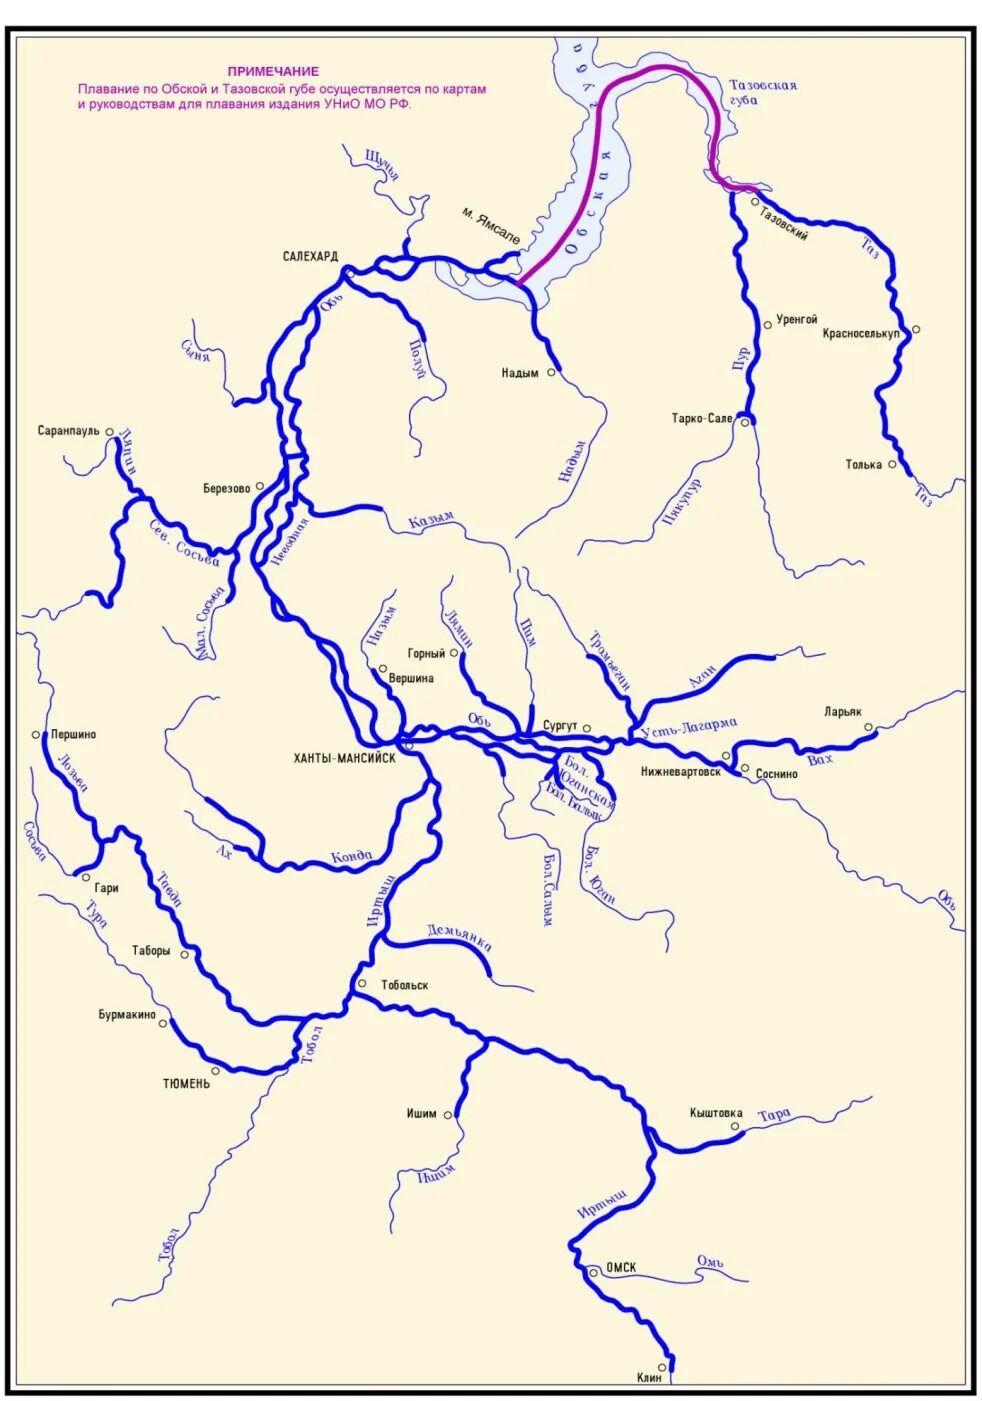 Бассейн реки Обь. Исток и Устье реки Обь на карте. Бассейн реки Обь на карте. Схема реки Енисей. Назовите реку транспортную артерию урала